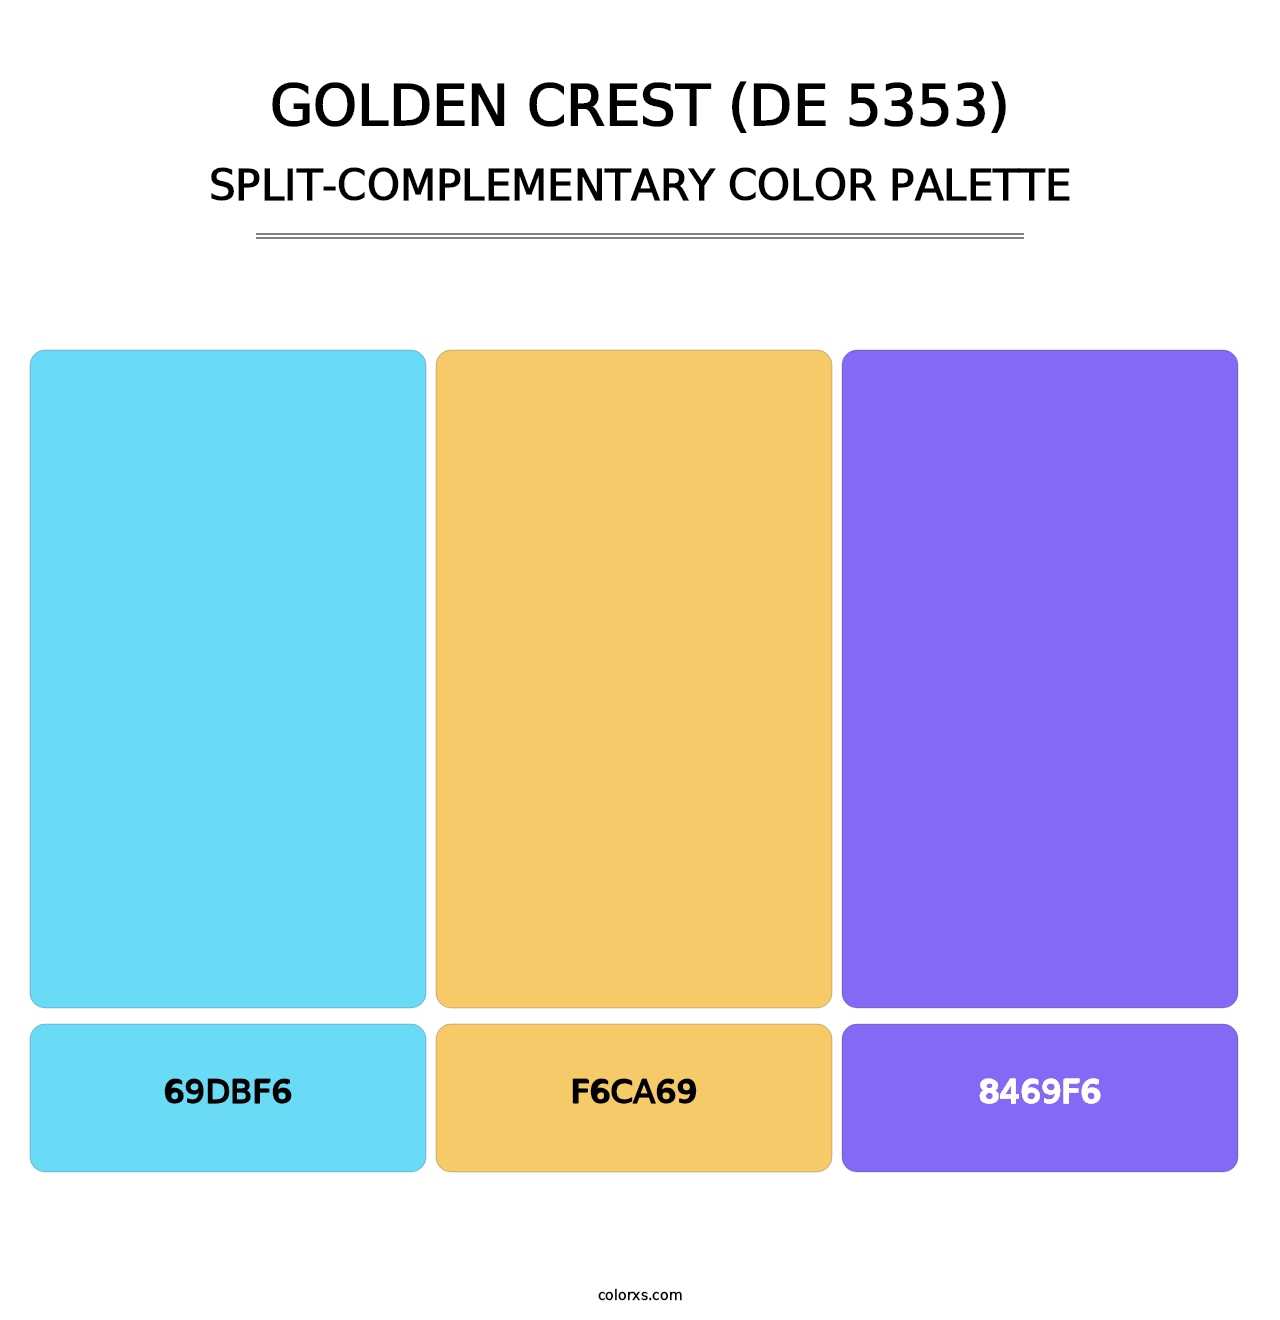 Golden Crest (DE 5353) - Split-Complementary Color Palette